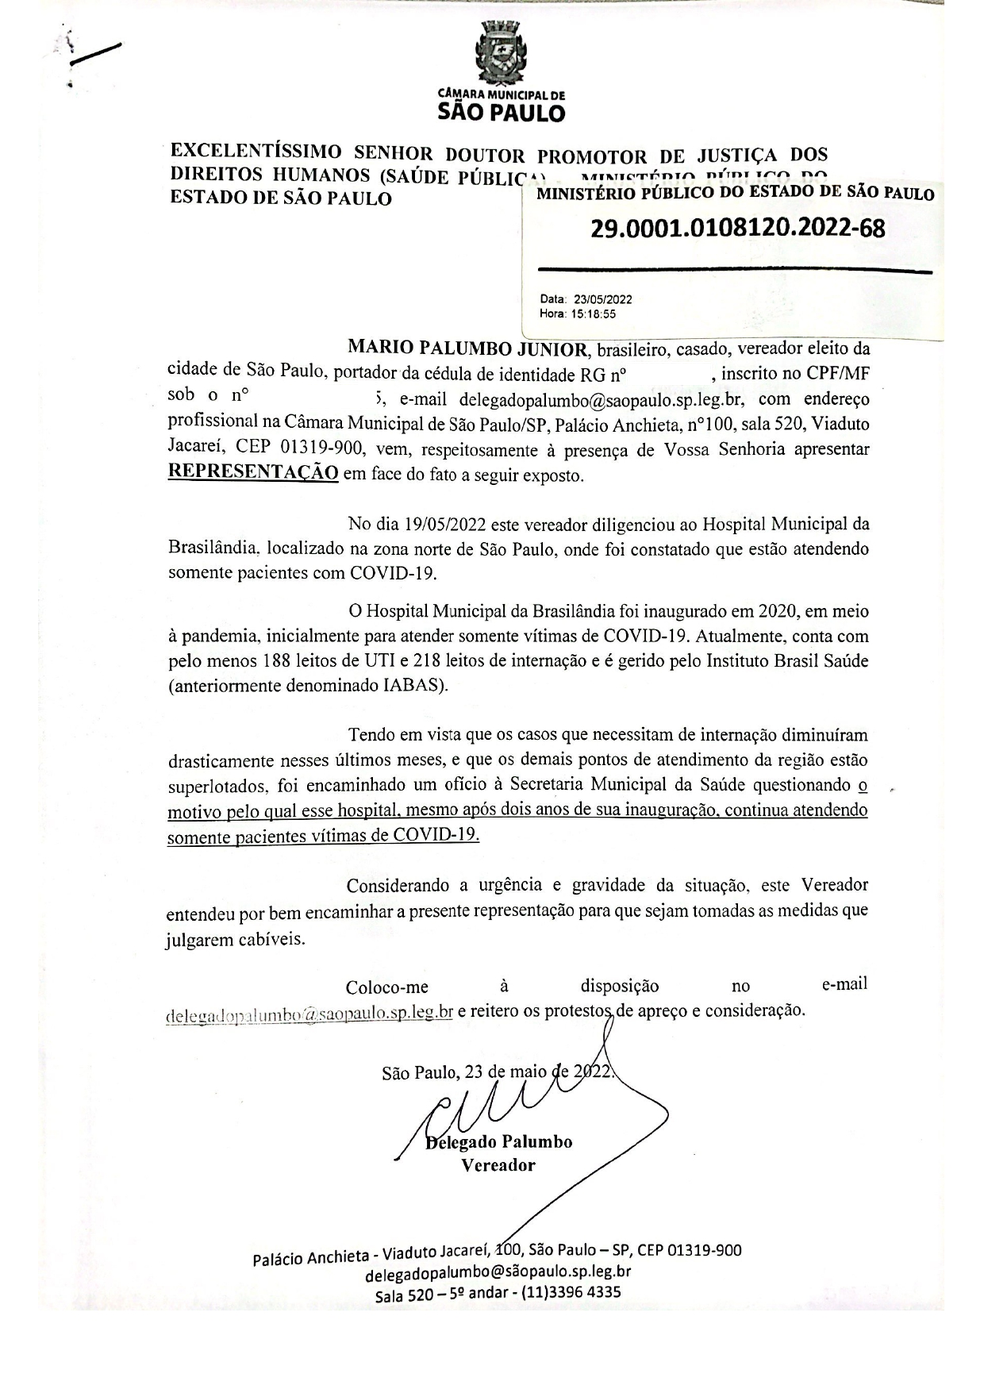 Pedido de investigação do MP para o Hospital da Brasilândia, na Zona Norte de São Paulo. — Foto: Reprodução